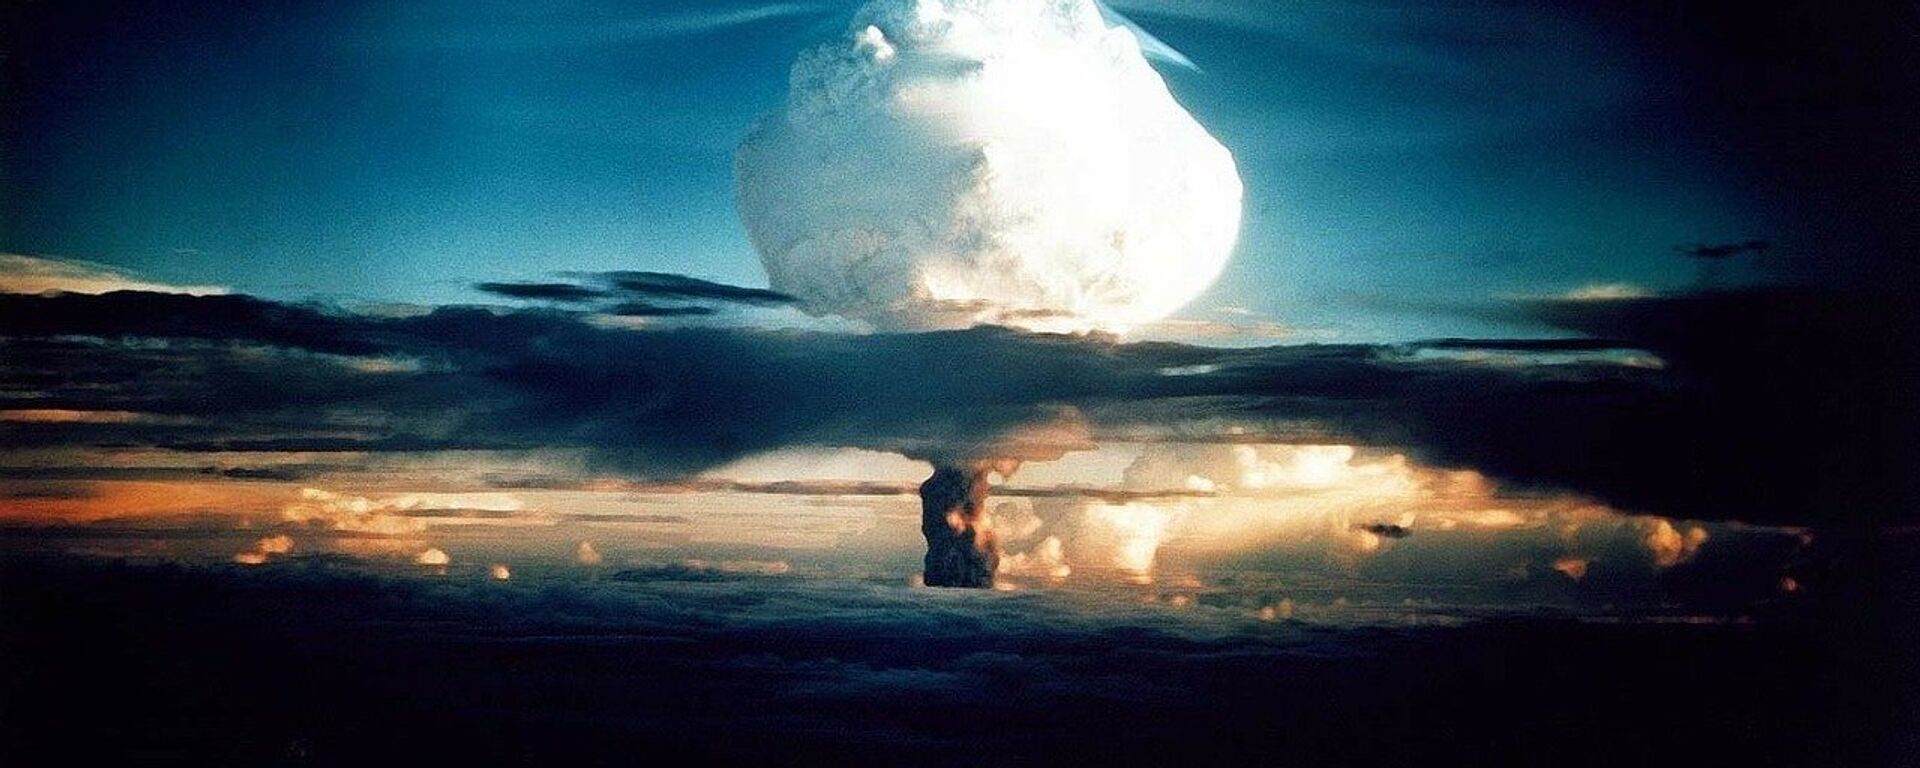 Explosión nuclear (imagen referencial) - Sputnik Mundo, 1920, 13.06.2022